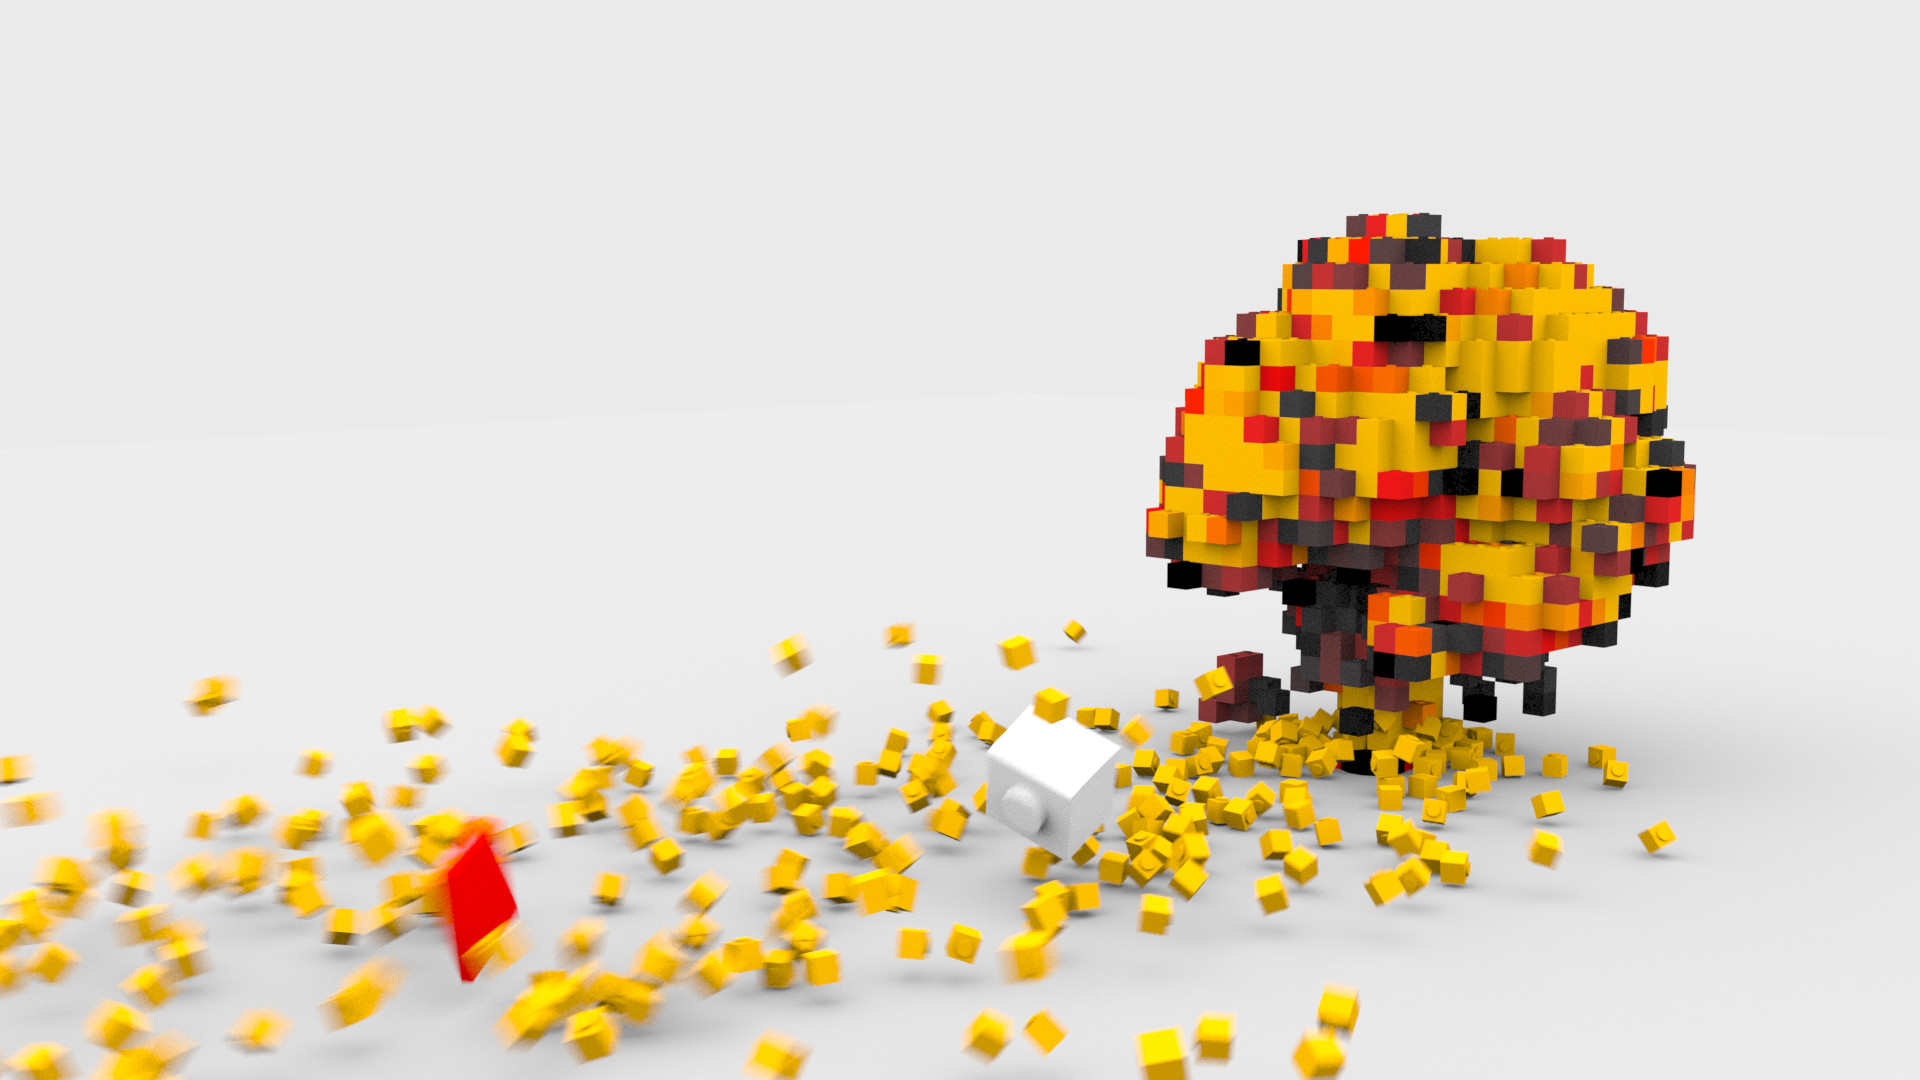 Rodriguez - Lego Explosion